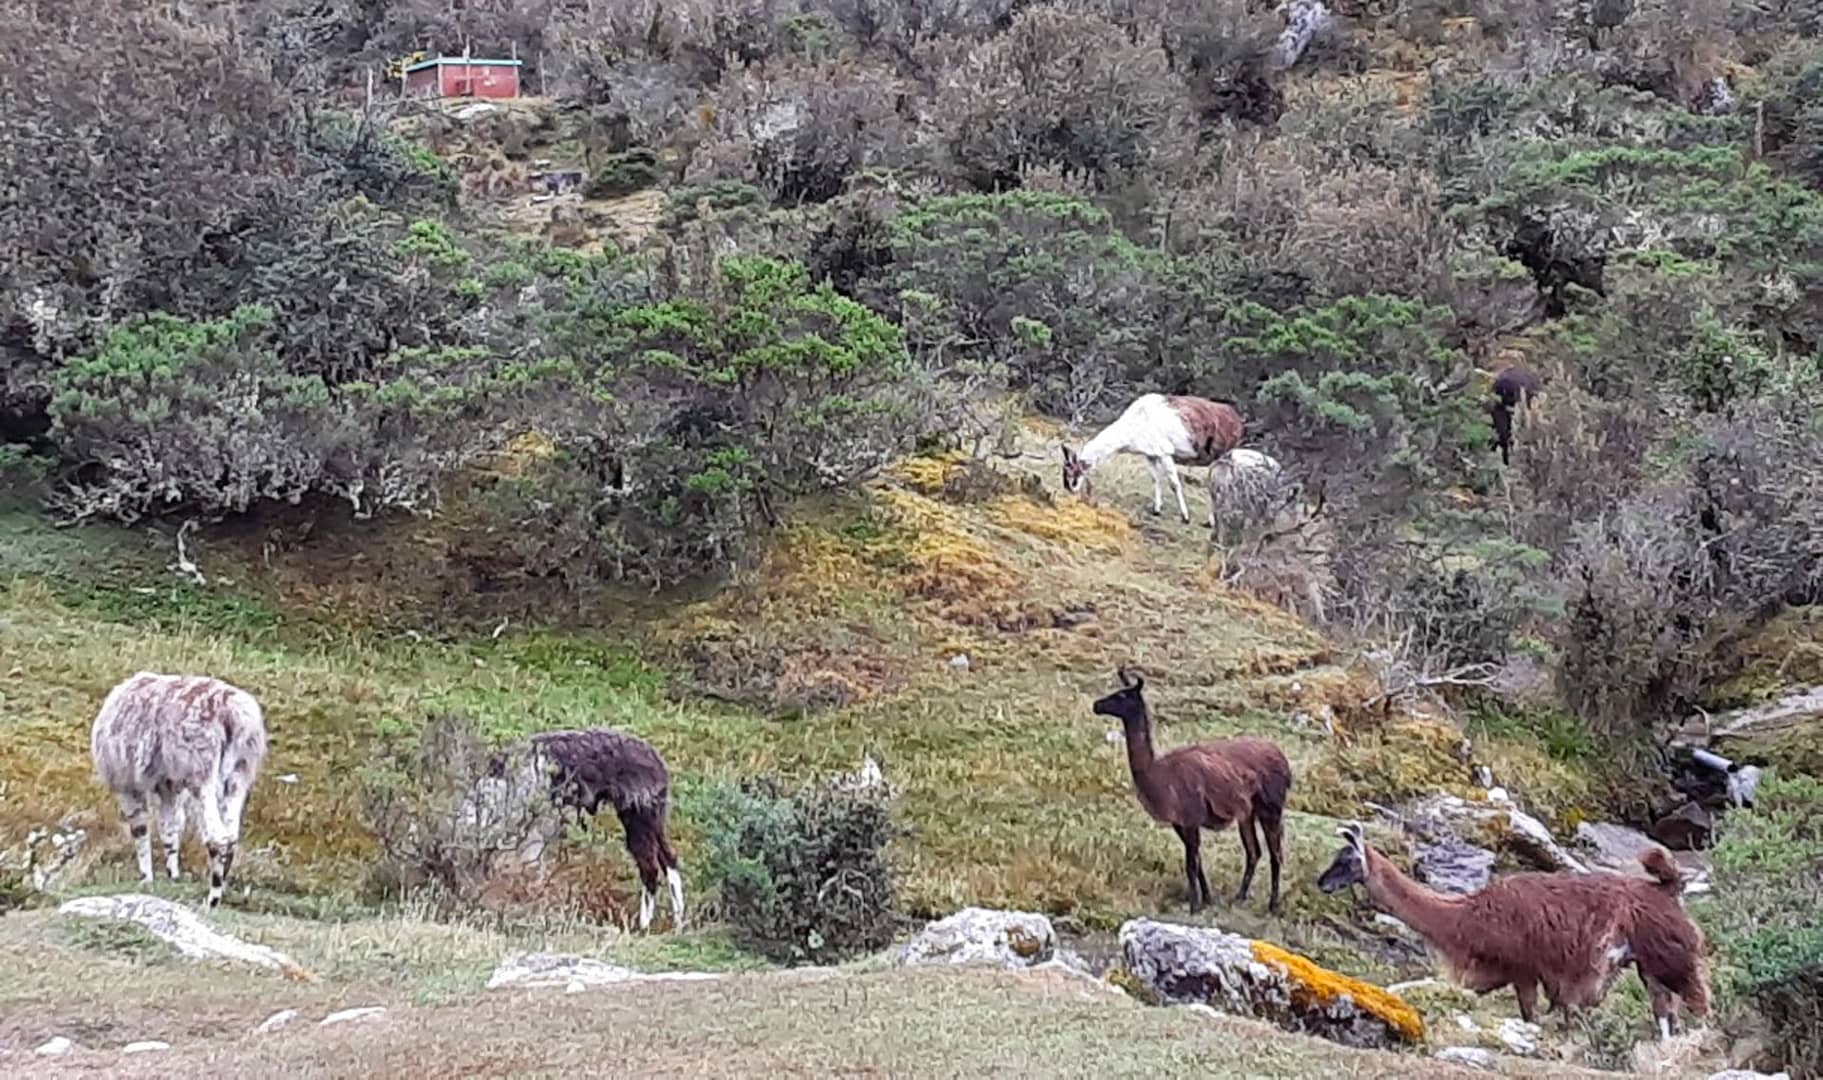 llamas grazing in a field